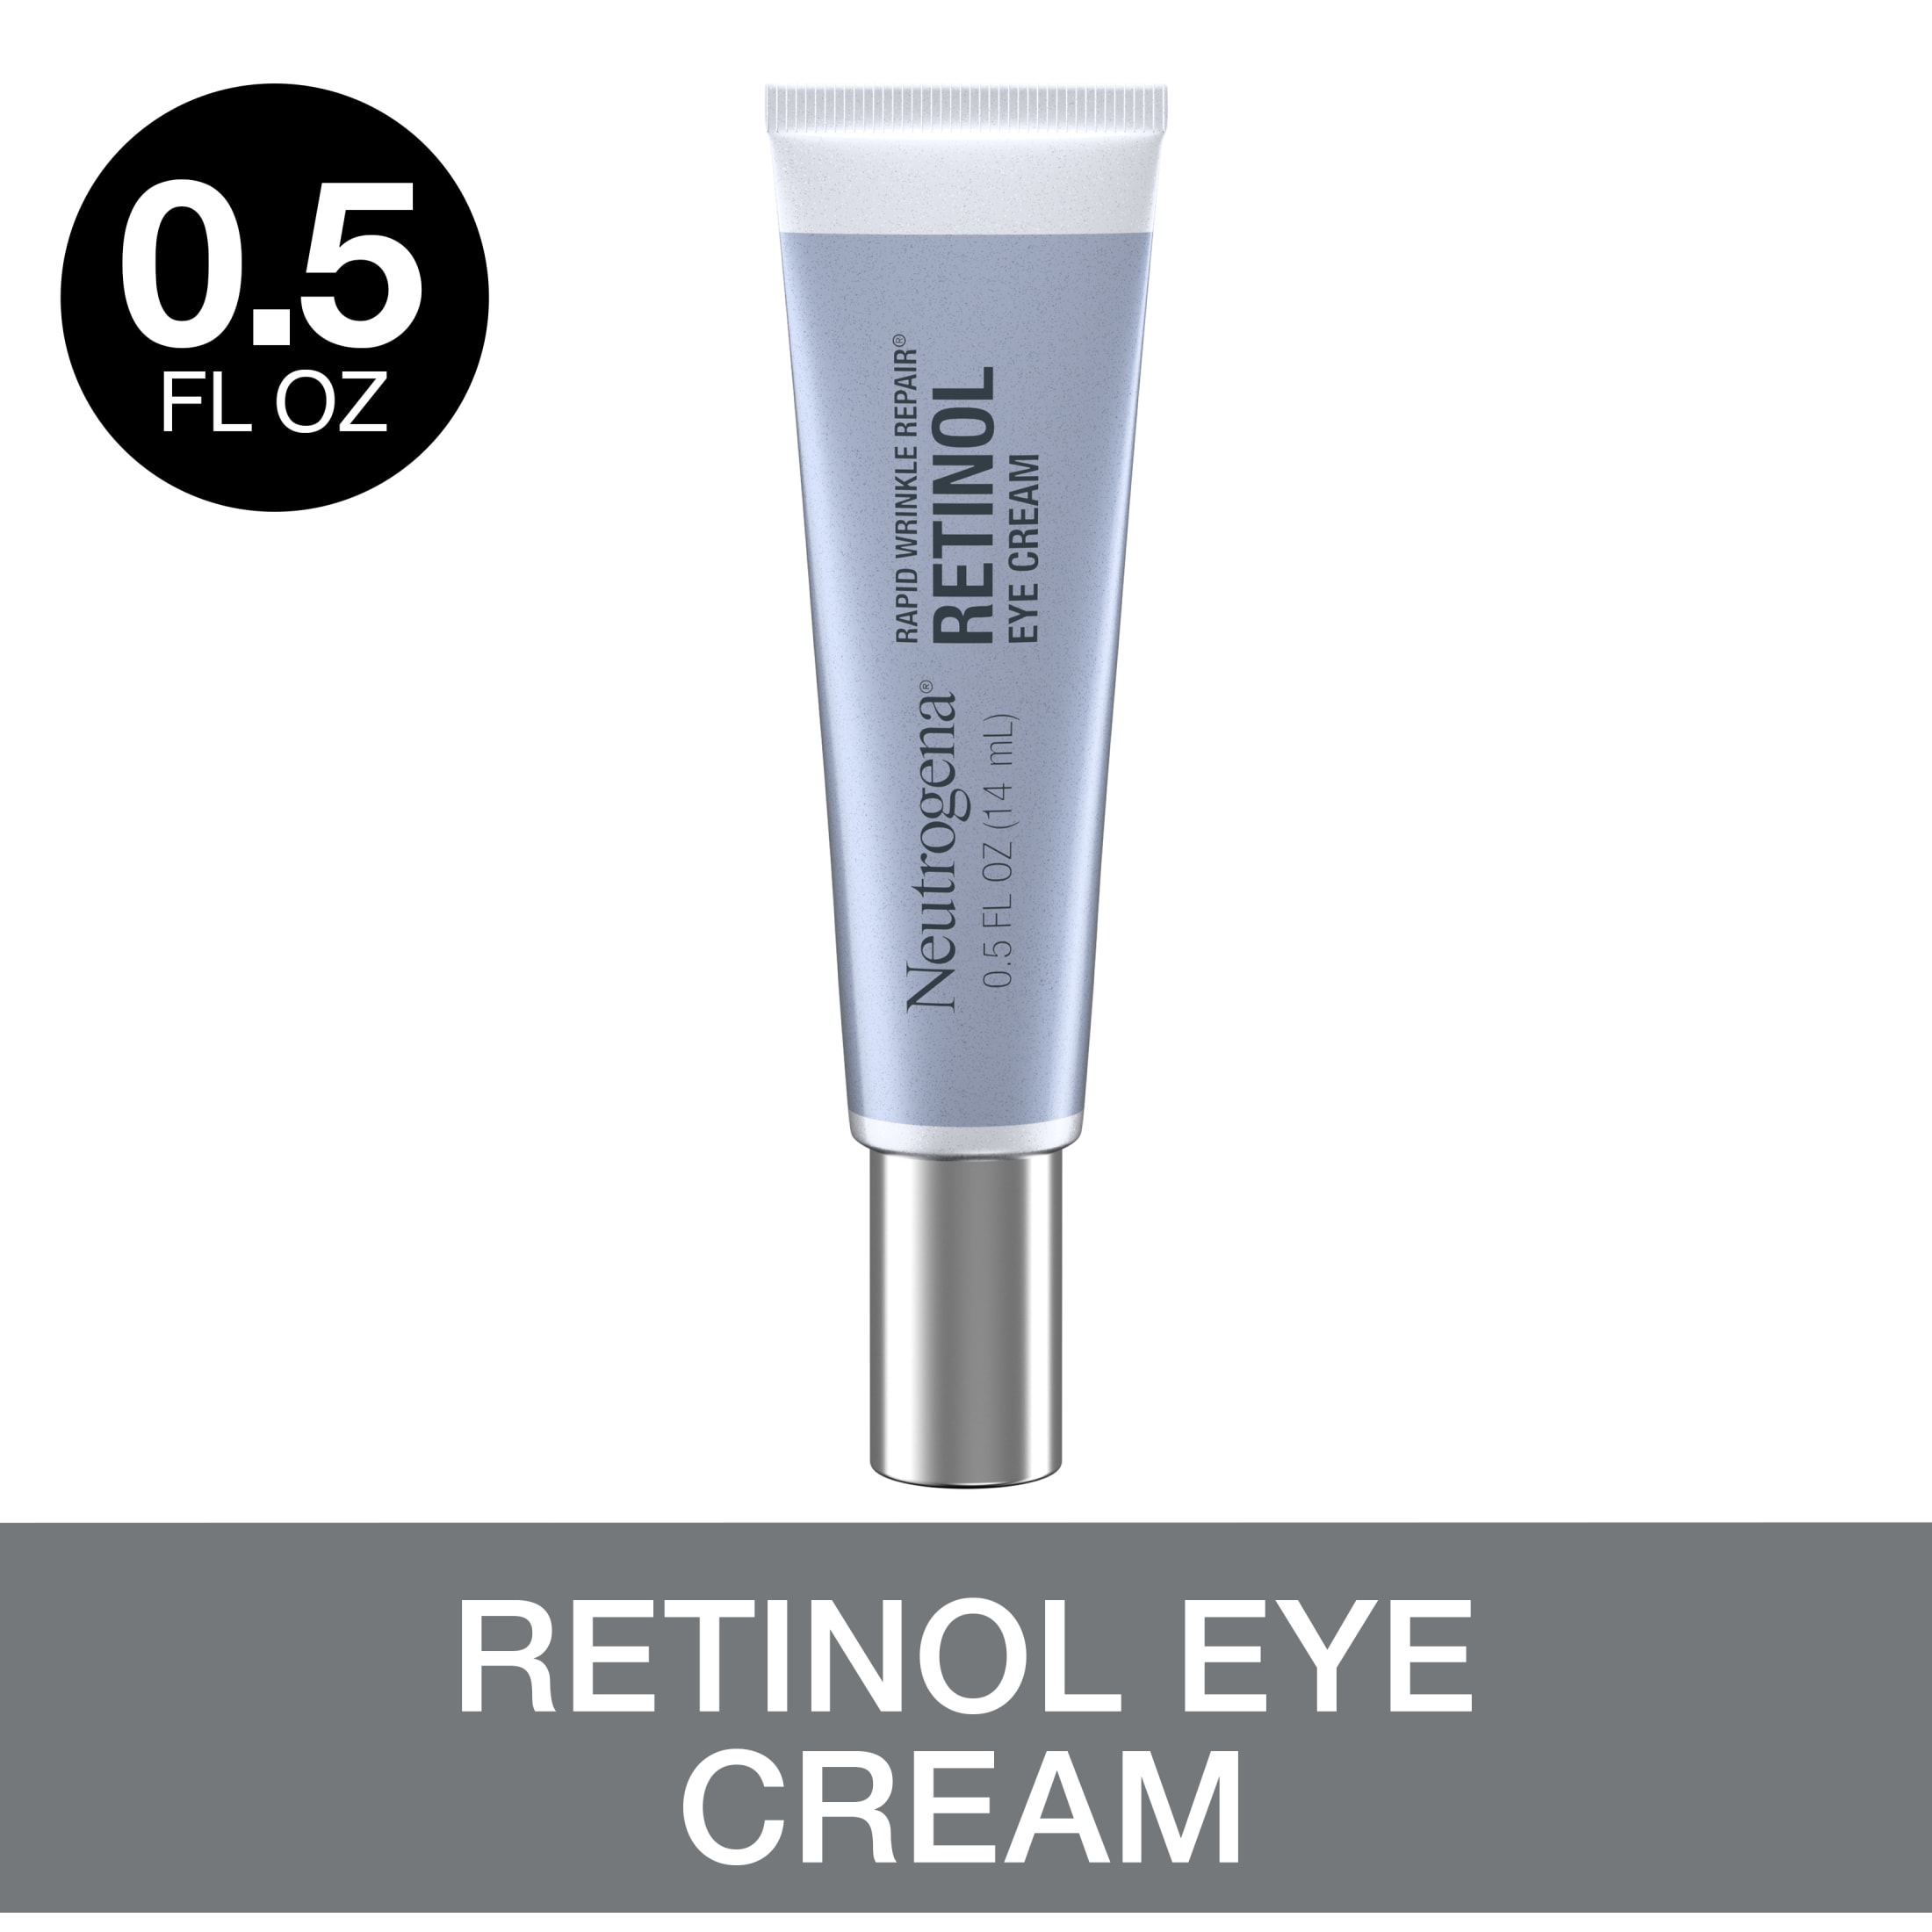 Neutrogena Rapid Wrinkle Repair Retinol Skin Care Eye Cream, 0.5 oz - image 1 of 10